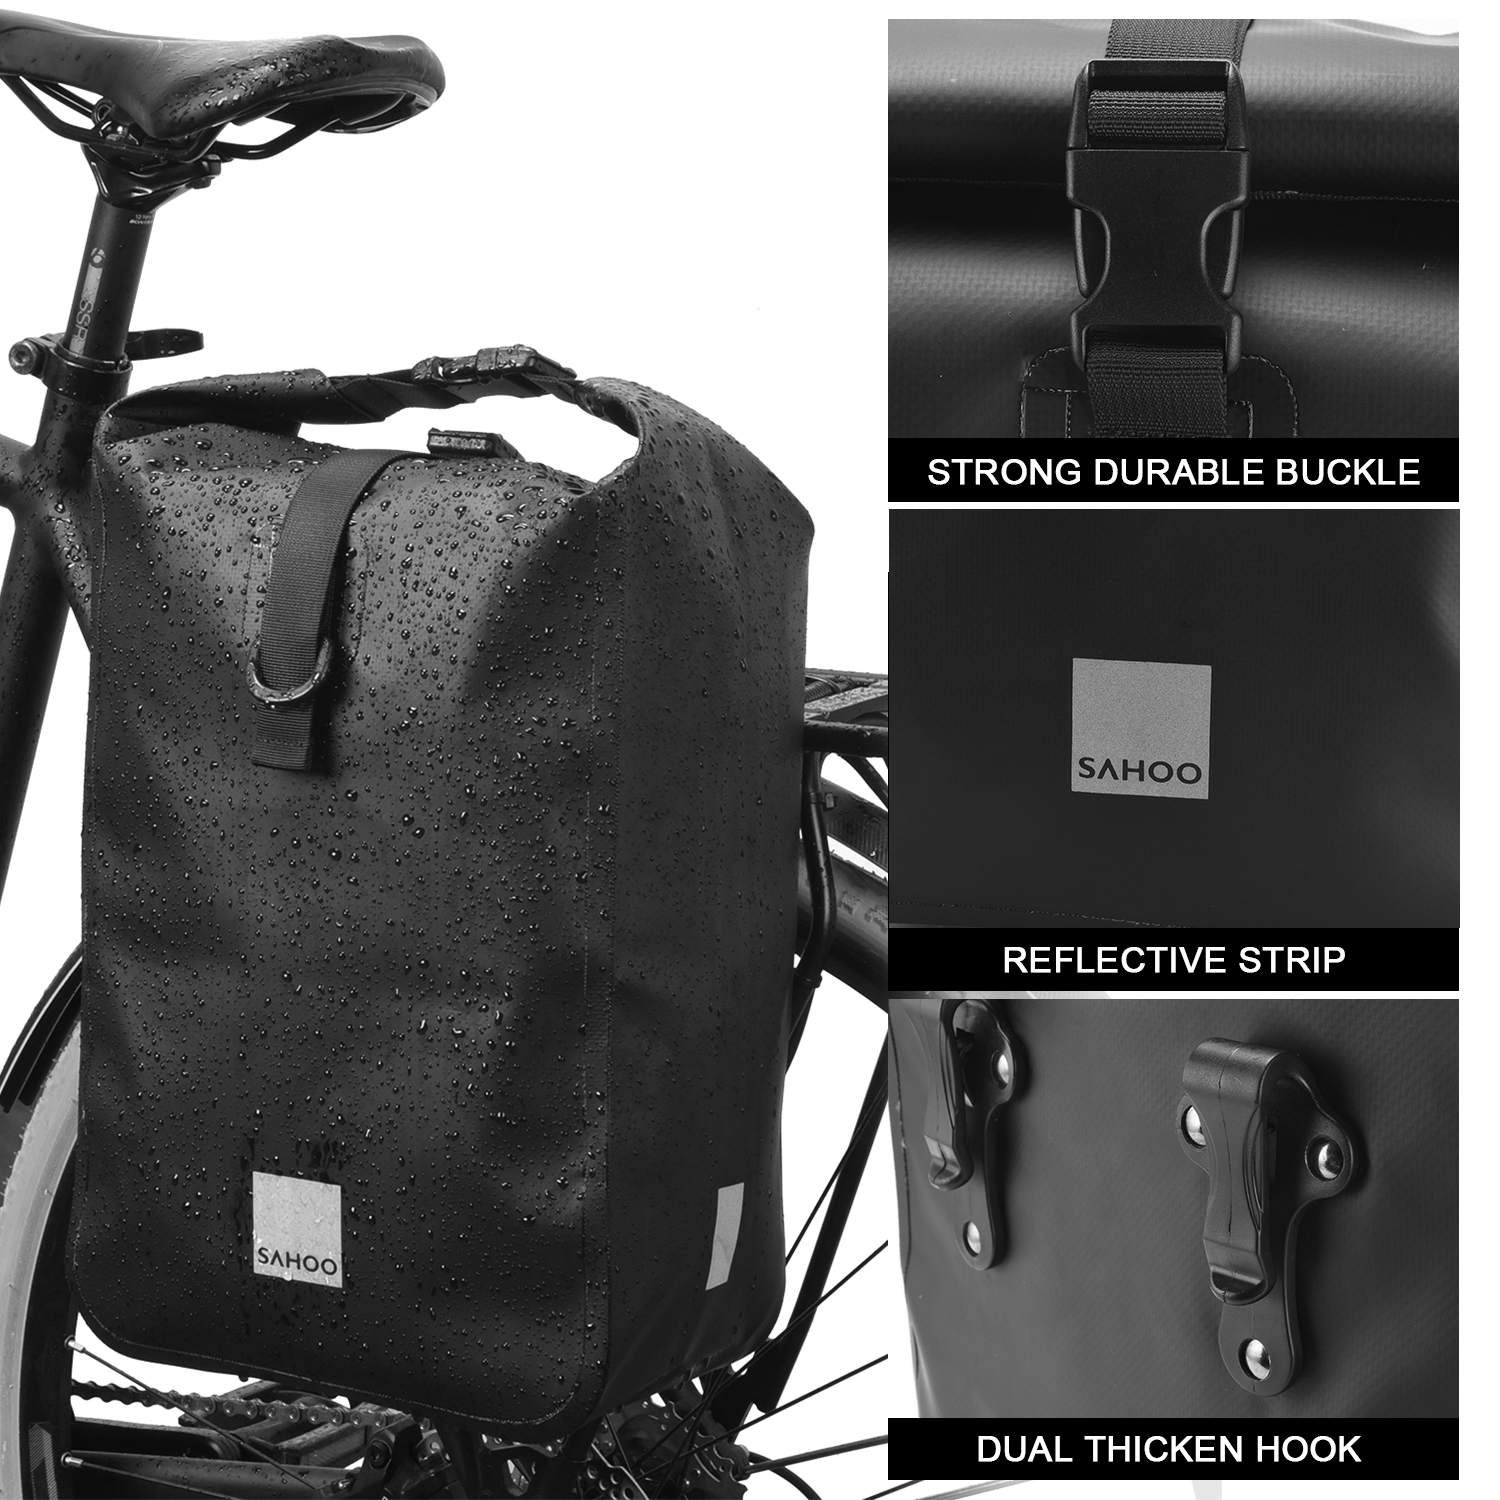 Túi đựng đồ có sức chứa lớn cho yên sau xe đạp, chất liệu vải chống thấm nước